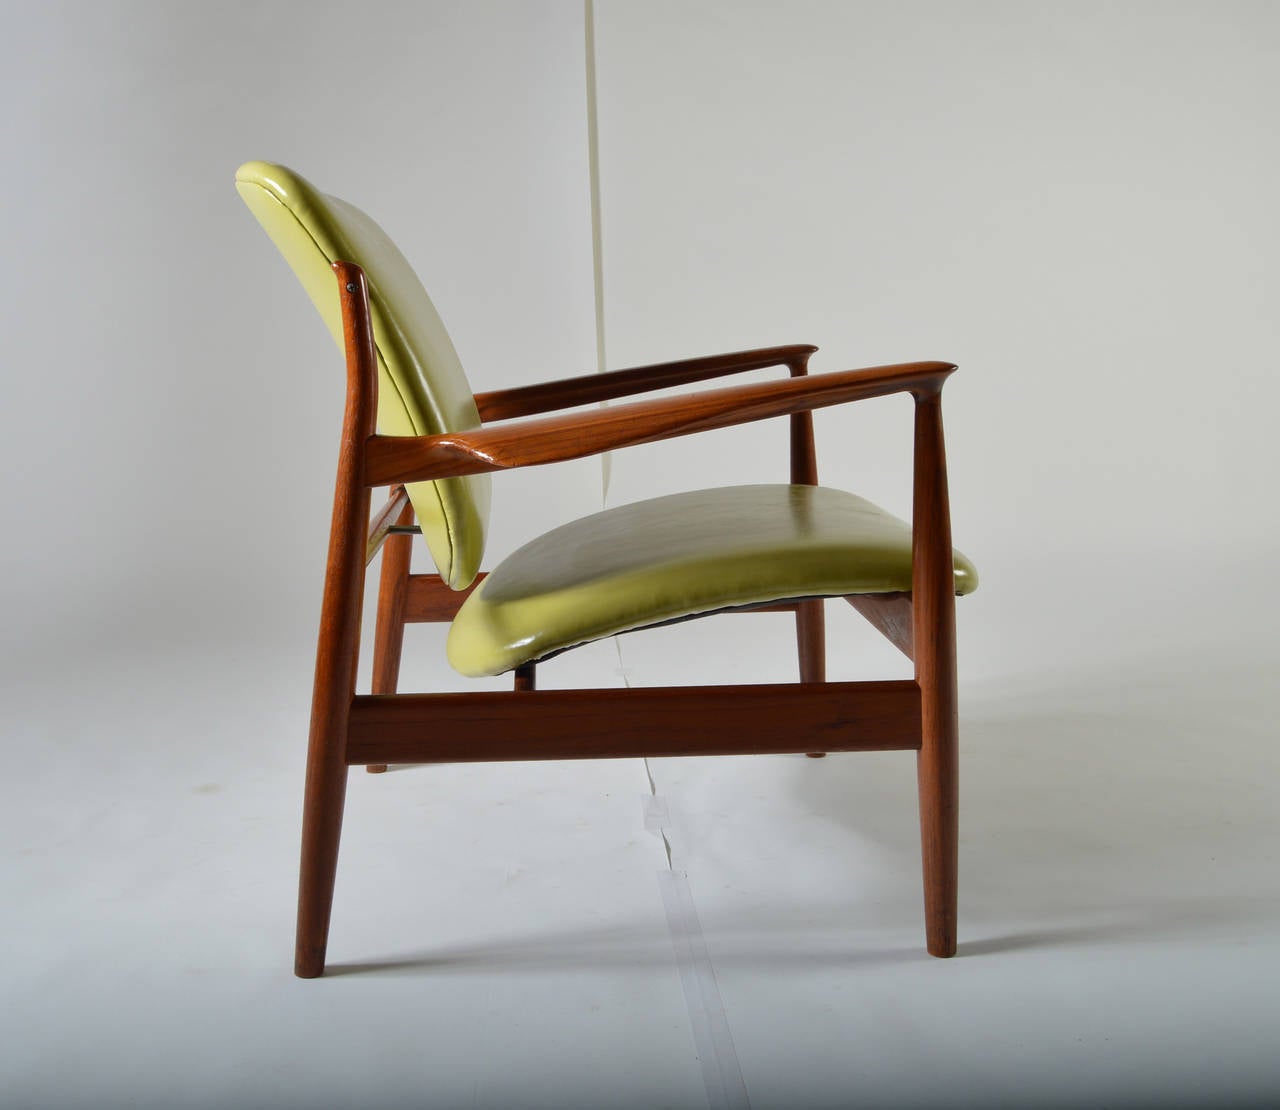 Easy chair model FD 136 designed by Finn Juhl having original France & Son label on frame.